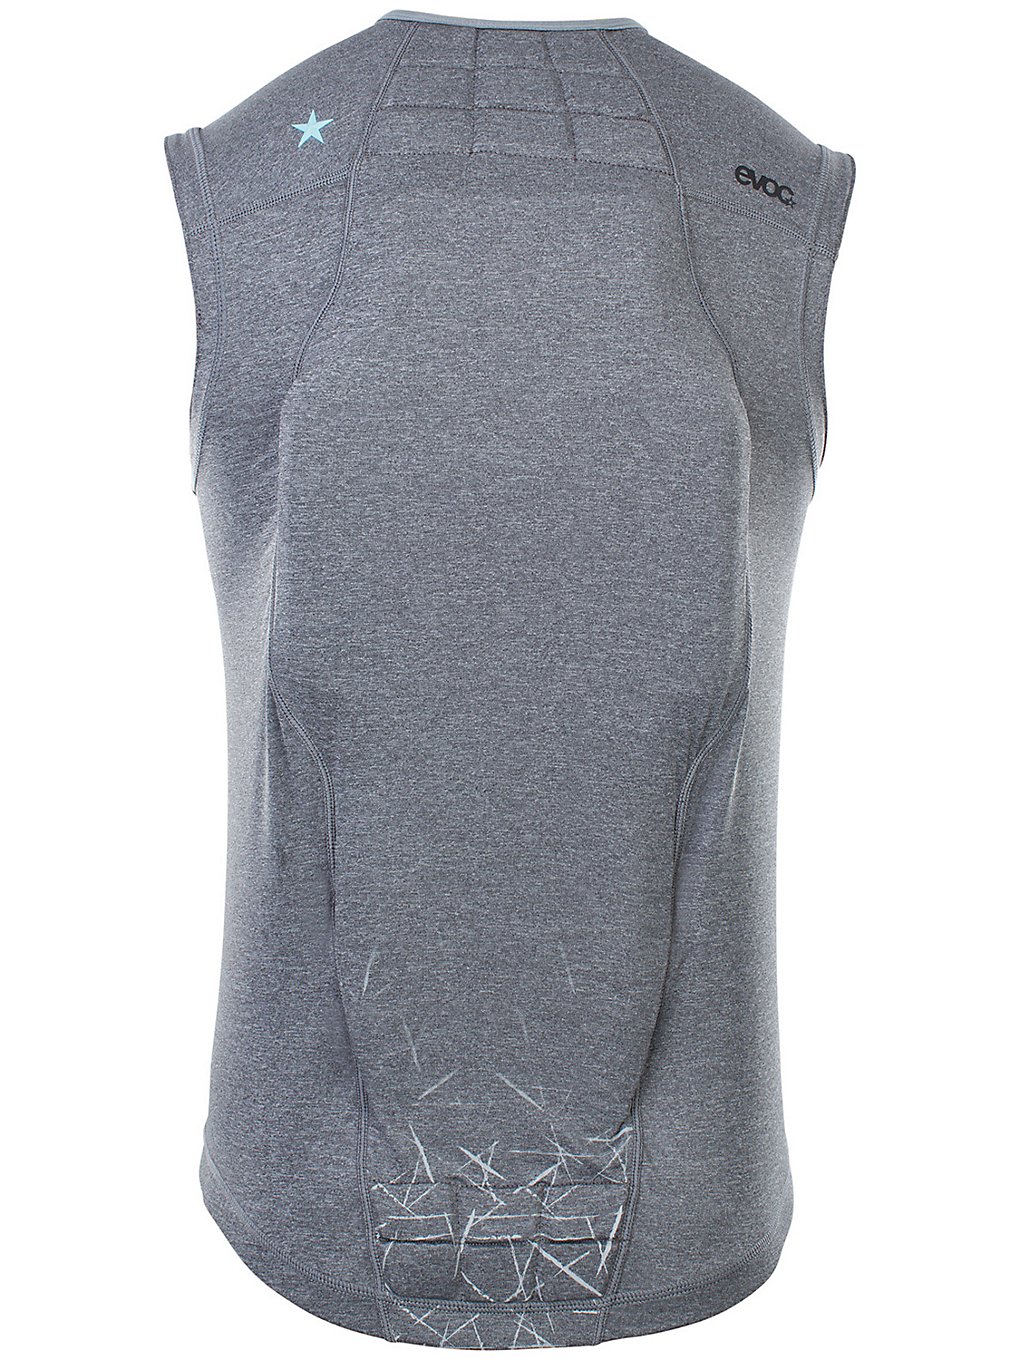 Evoc Protector Vest Back Protector carbon grey kaufen